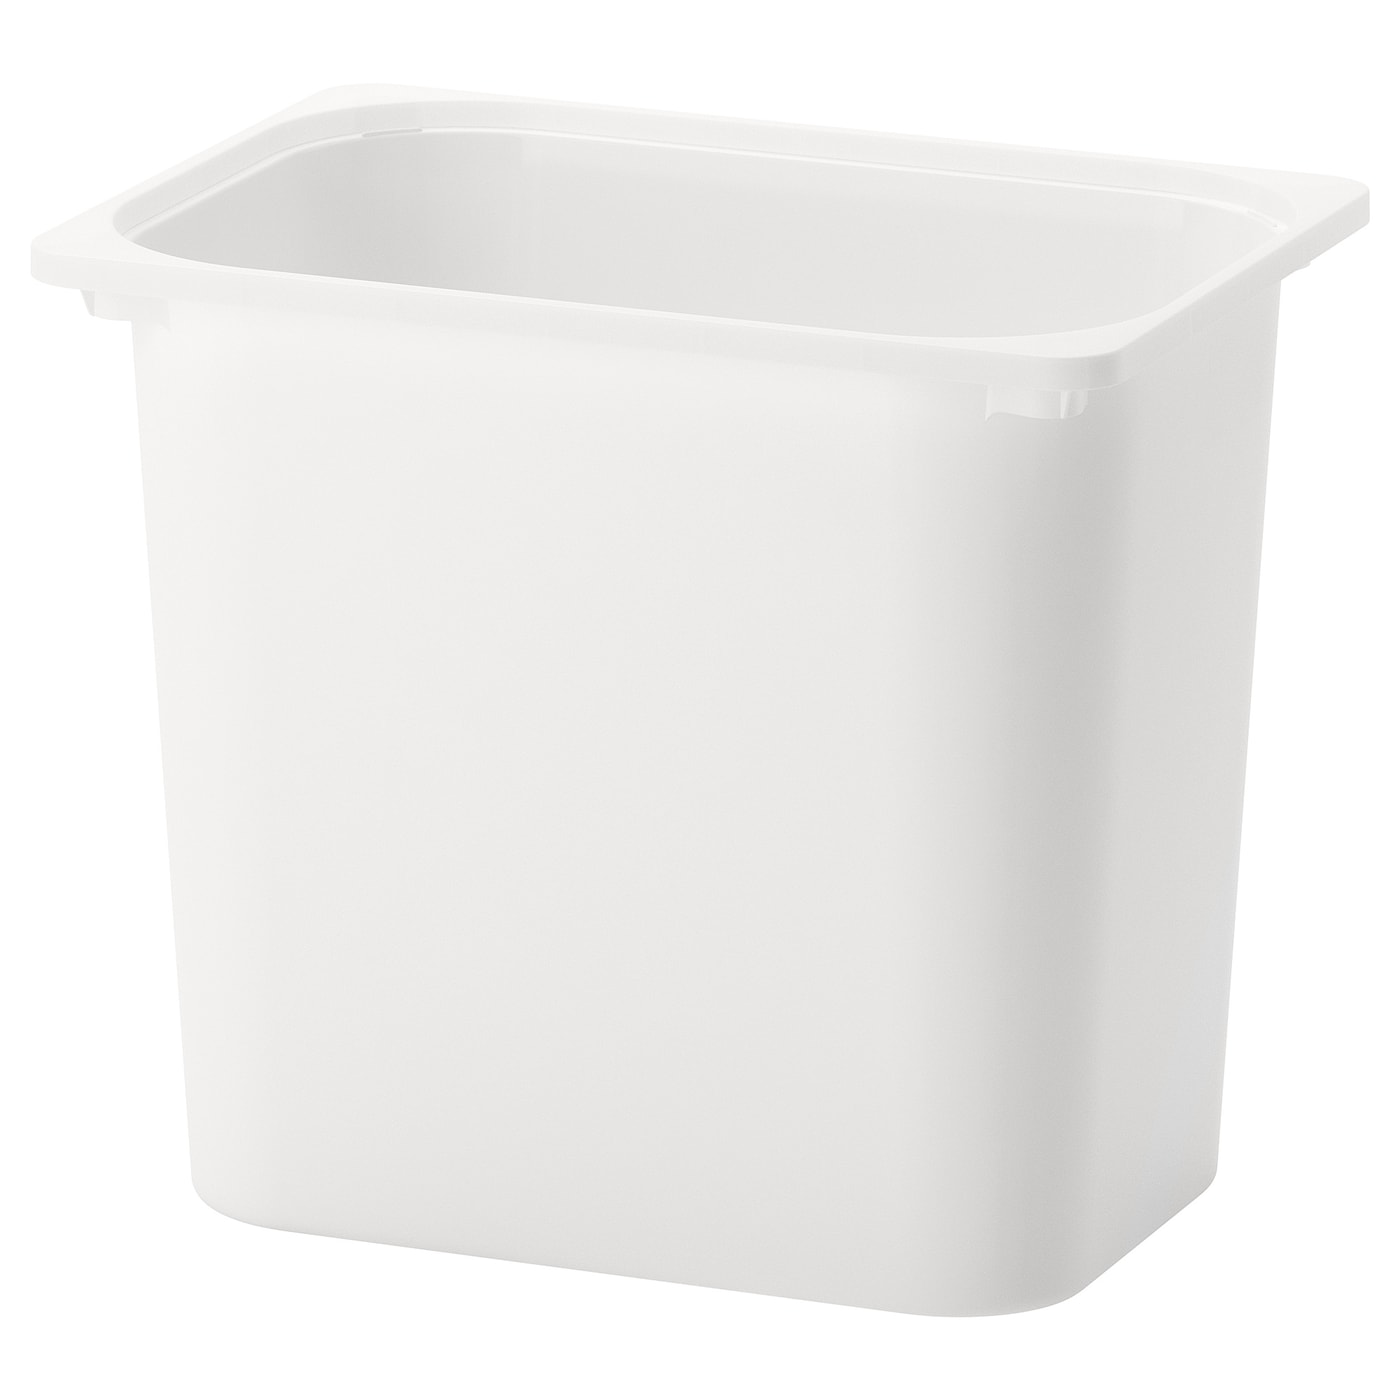 Ящик для хранения игрушек - TROFAST IKEA/ ТРУФАСТ ИКЕА, 42x30x36 см, белый